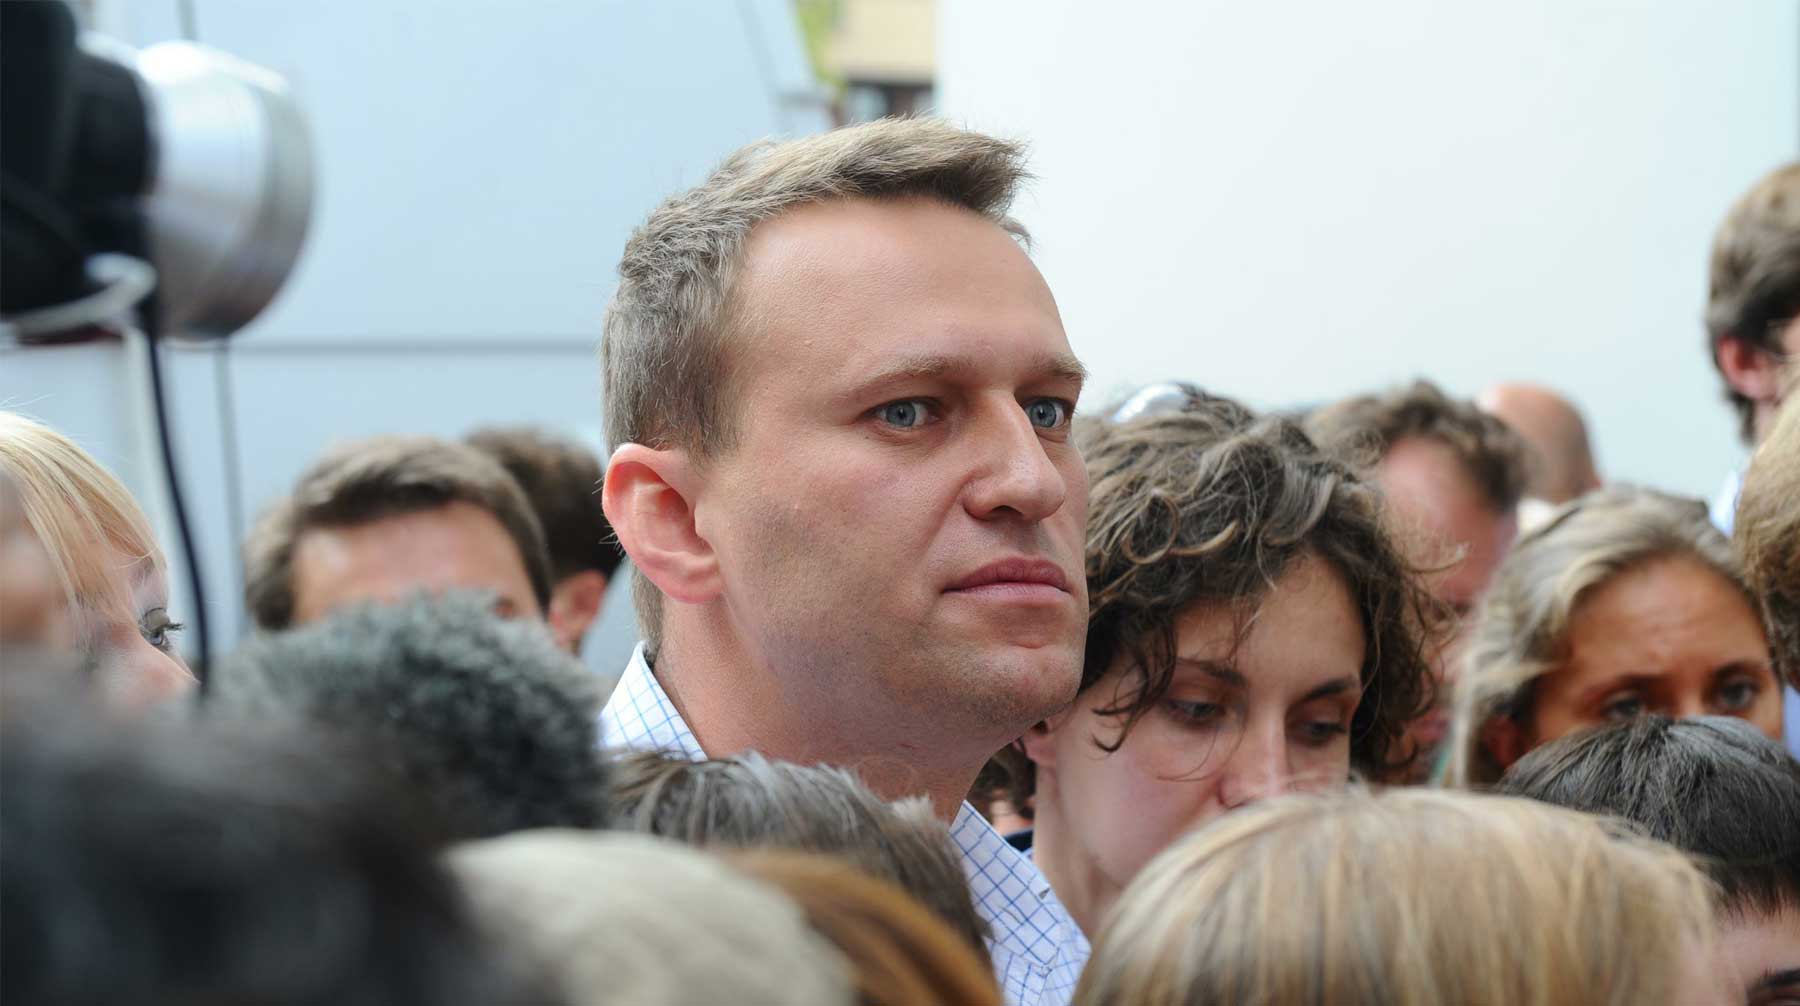 Оппозиционера задержали в день рождения жены Фото: © GLOBAL LOOK Press / Pravda Komsomolskaya